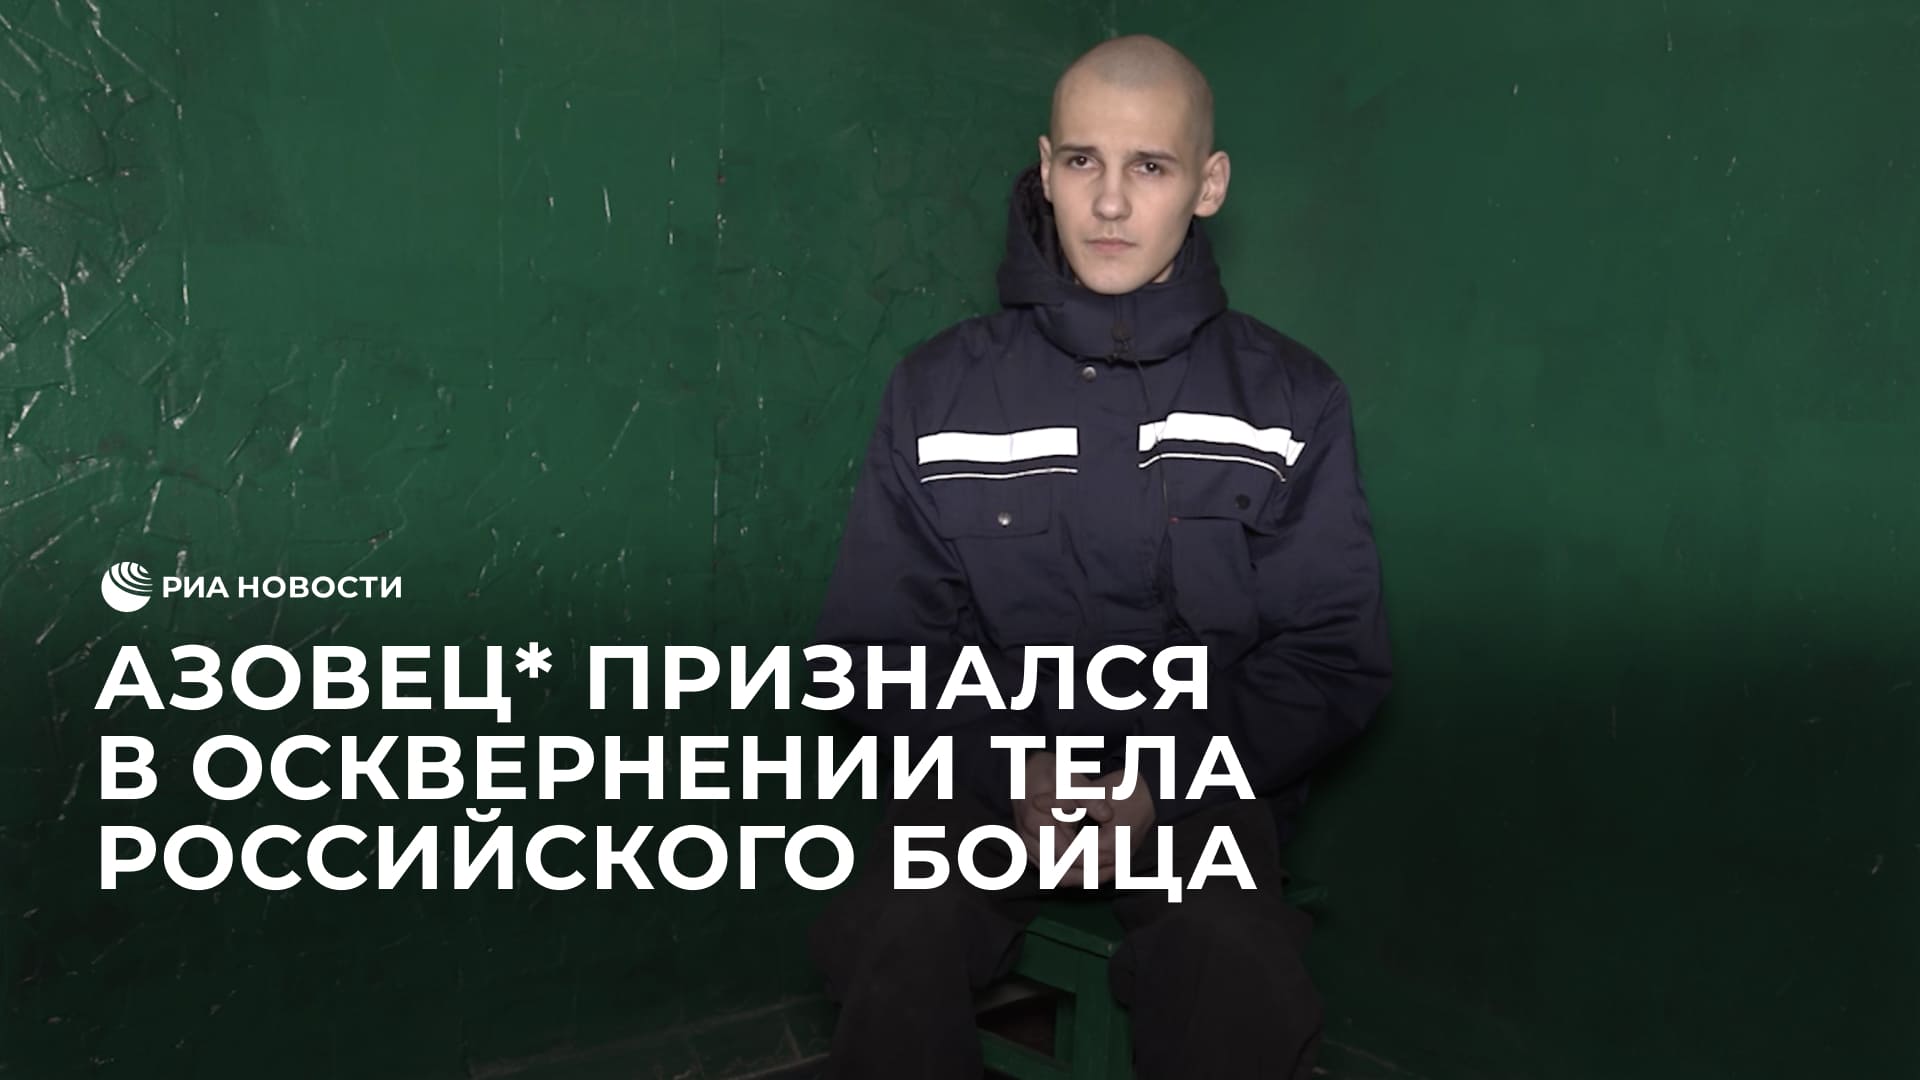 Азовец* признался в осквернении катаной тела погибшего российского бойца